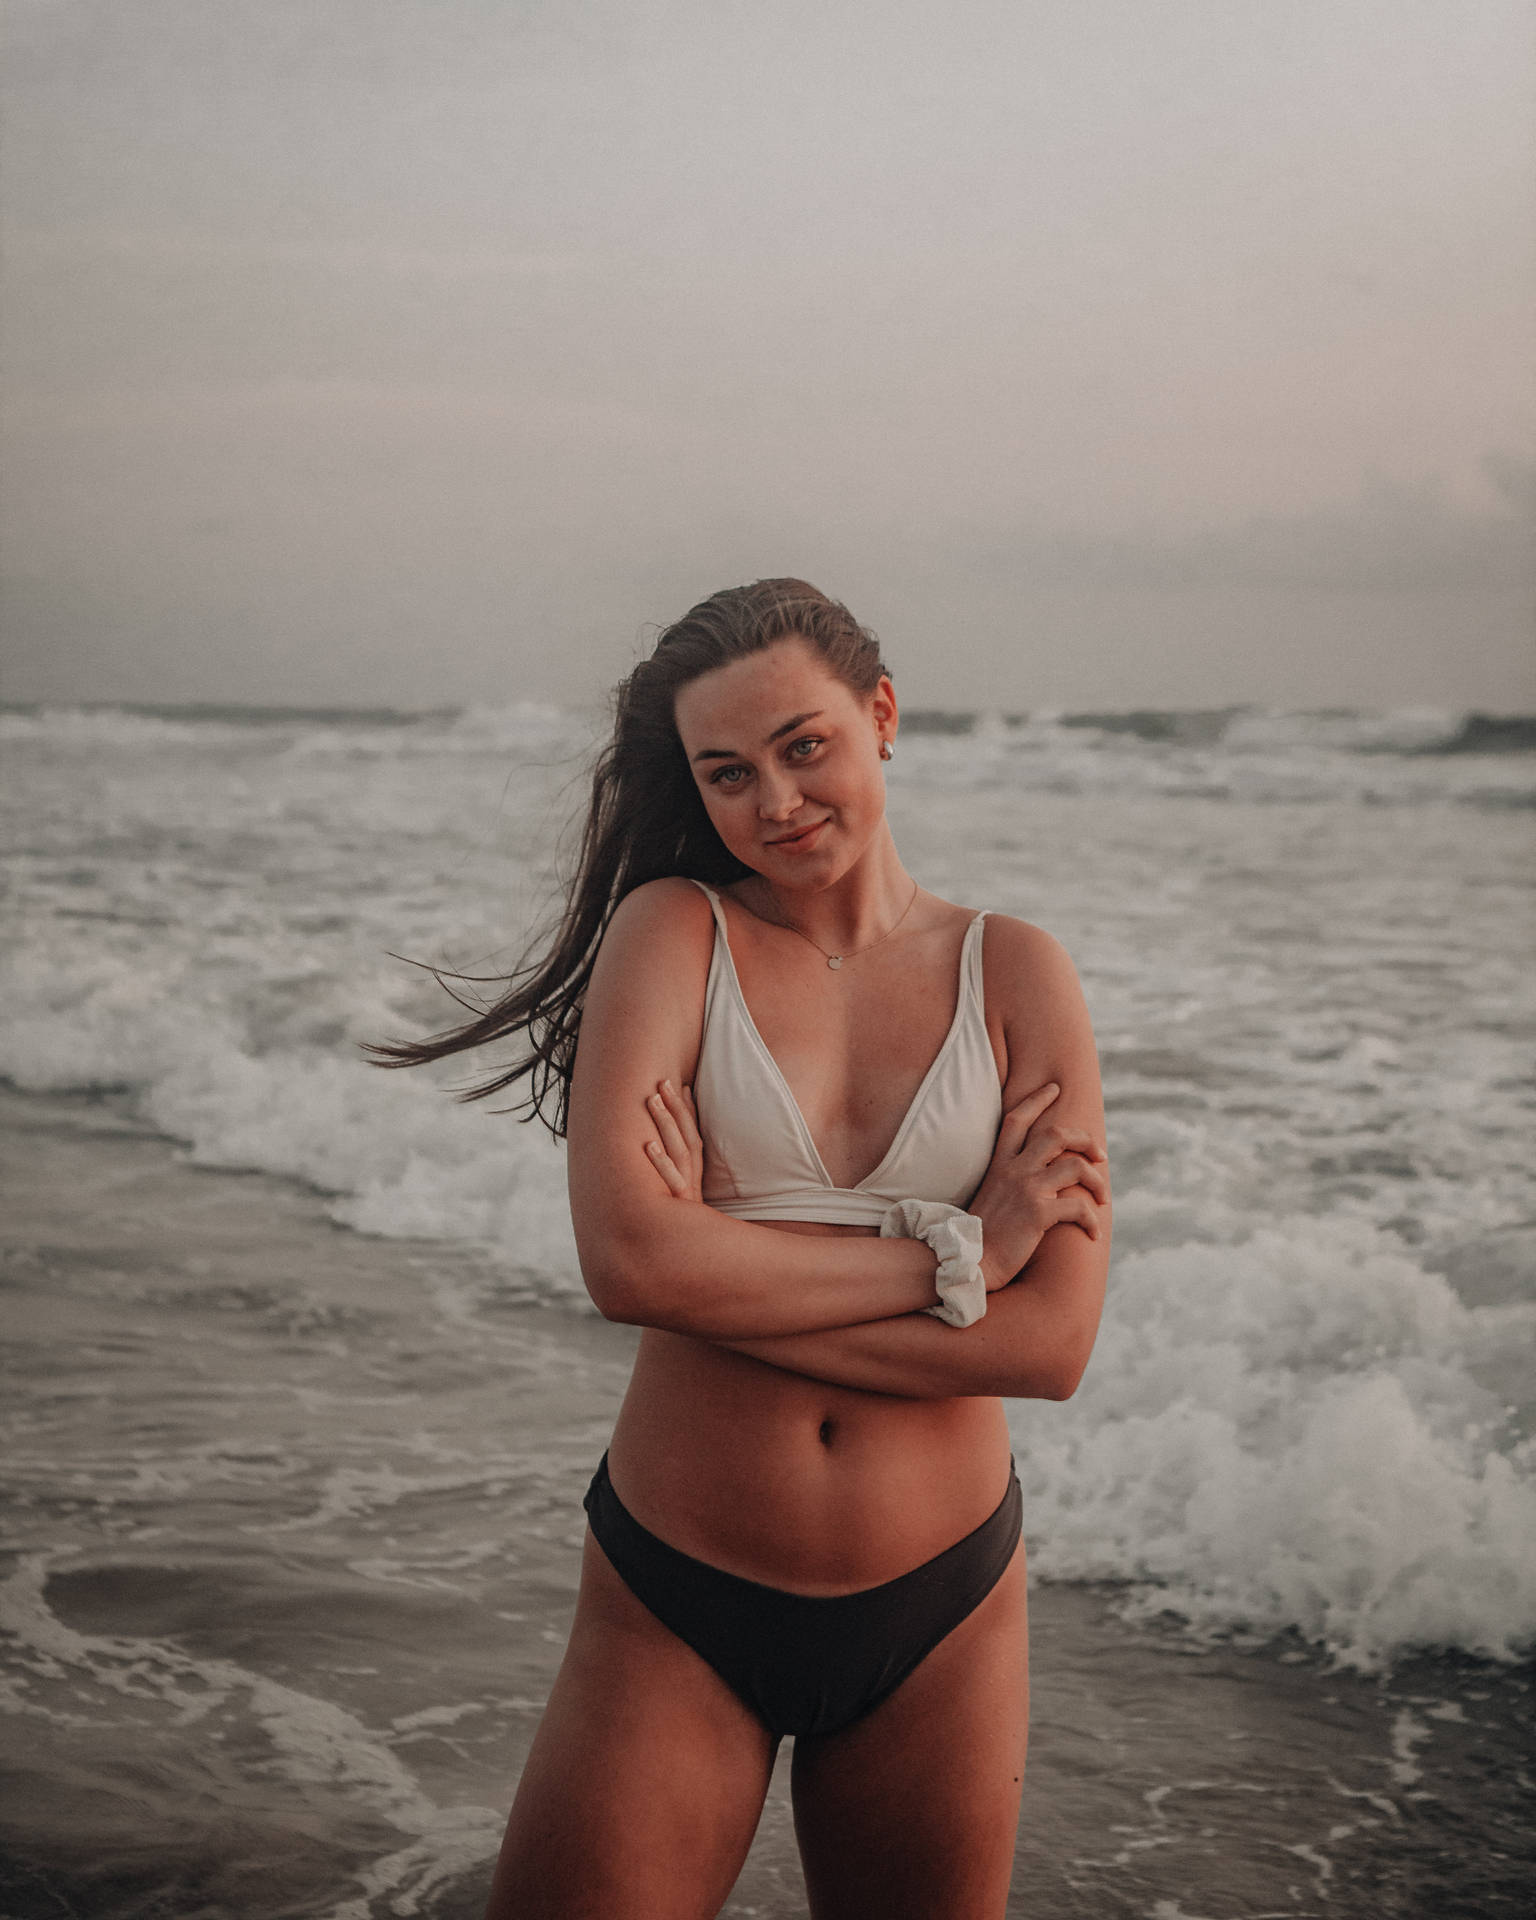 Girl In Bikini On Beach